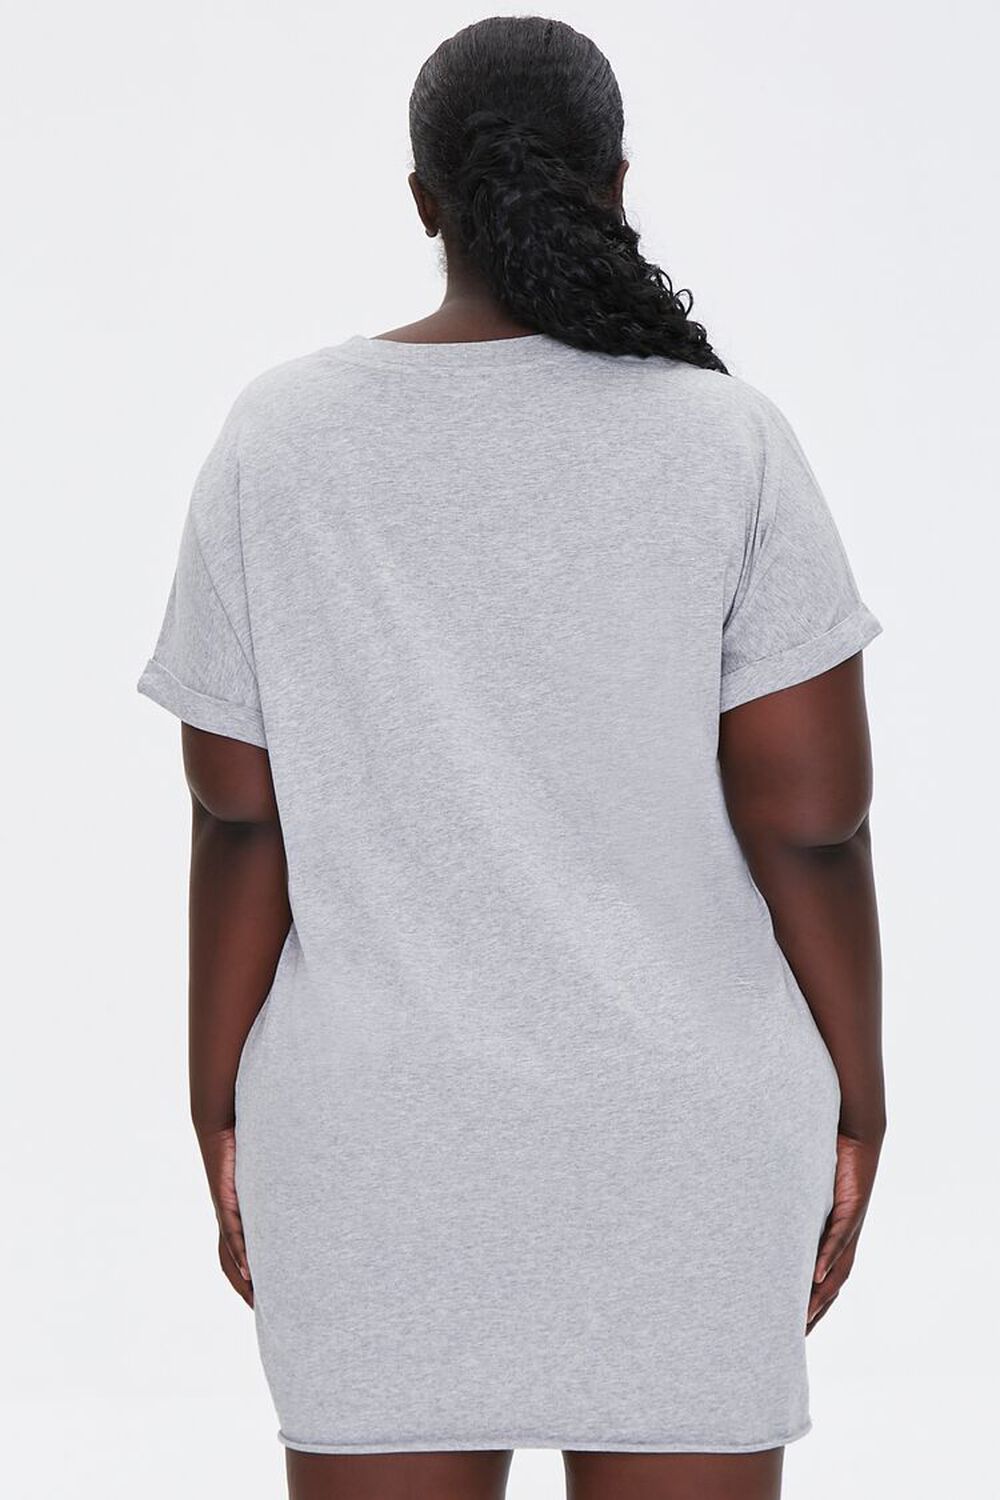 LIGHT GREY Plus Size Cuffed T-Shirt Dress, image 3